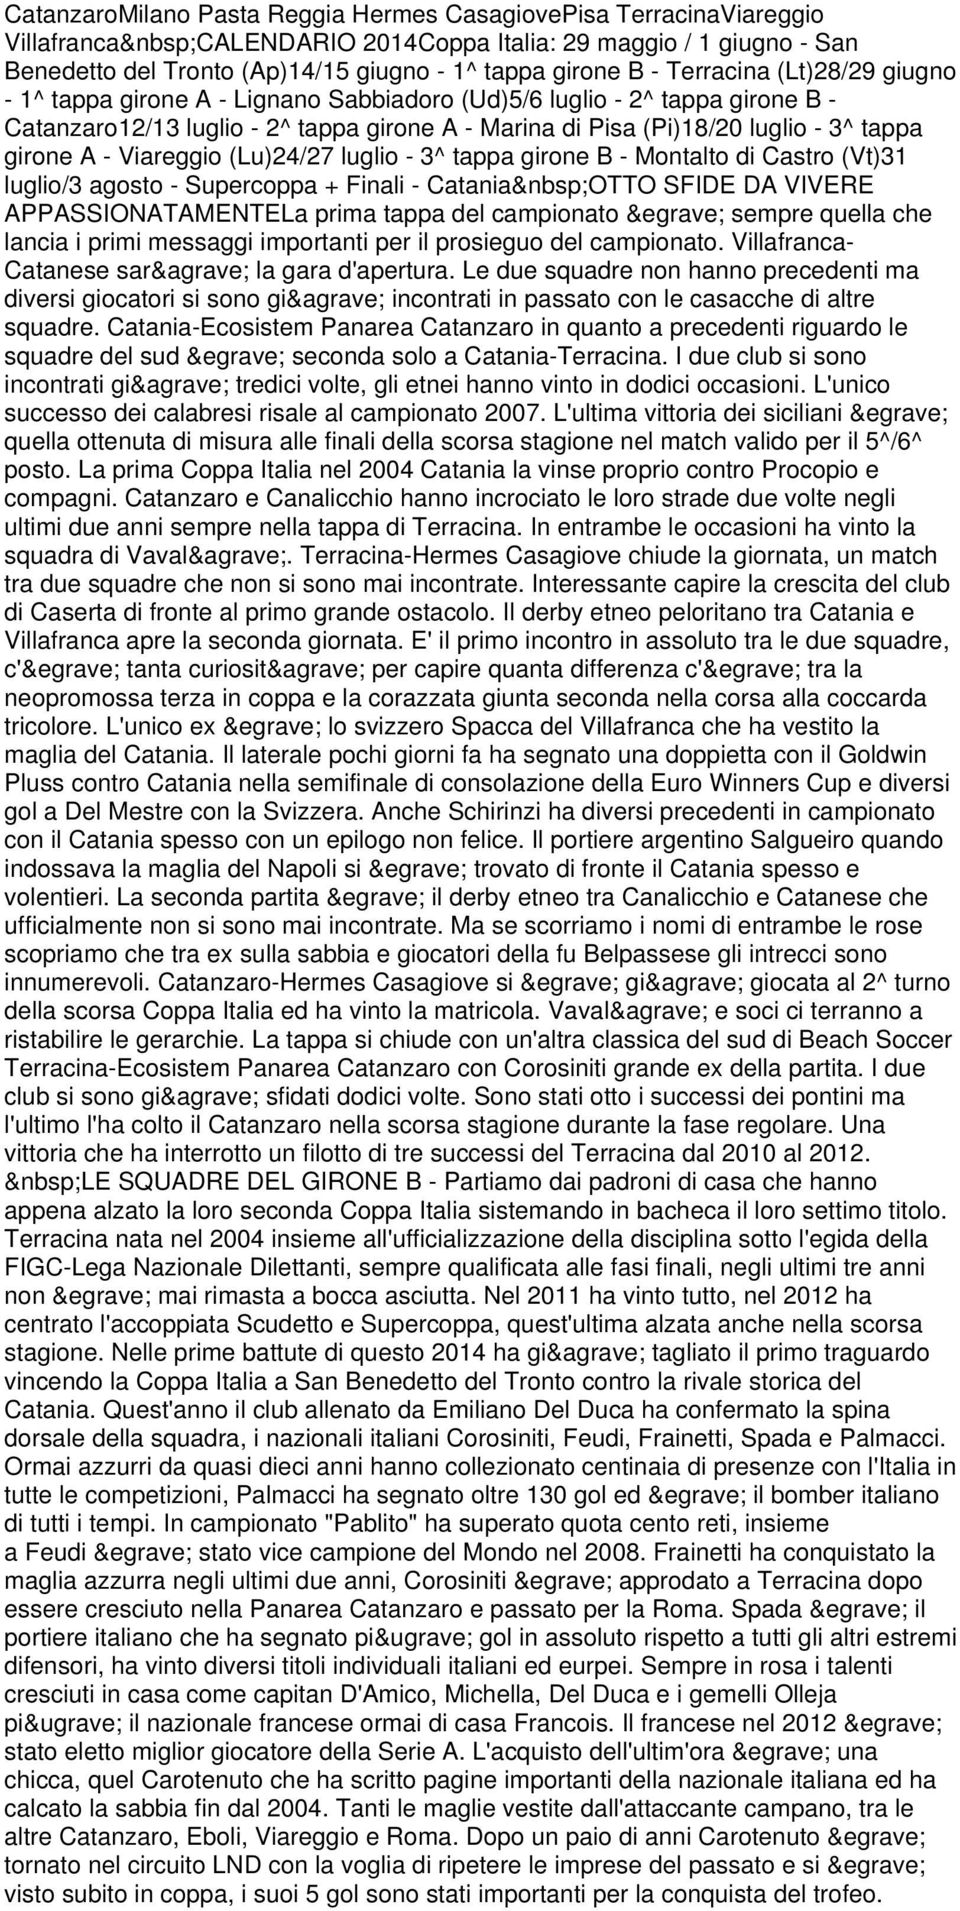 A - Viareggio (Lu)24/27 luglio - 3^ tappa girone B - Montalto di Castro (Vt)31 luglio/3 agosto - Supercoppa + Finali - Catania OTTO SFIDE DA VIVERE APPASSIONATAMENTELa prima tappa del campionato è